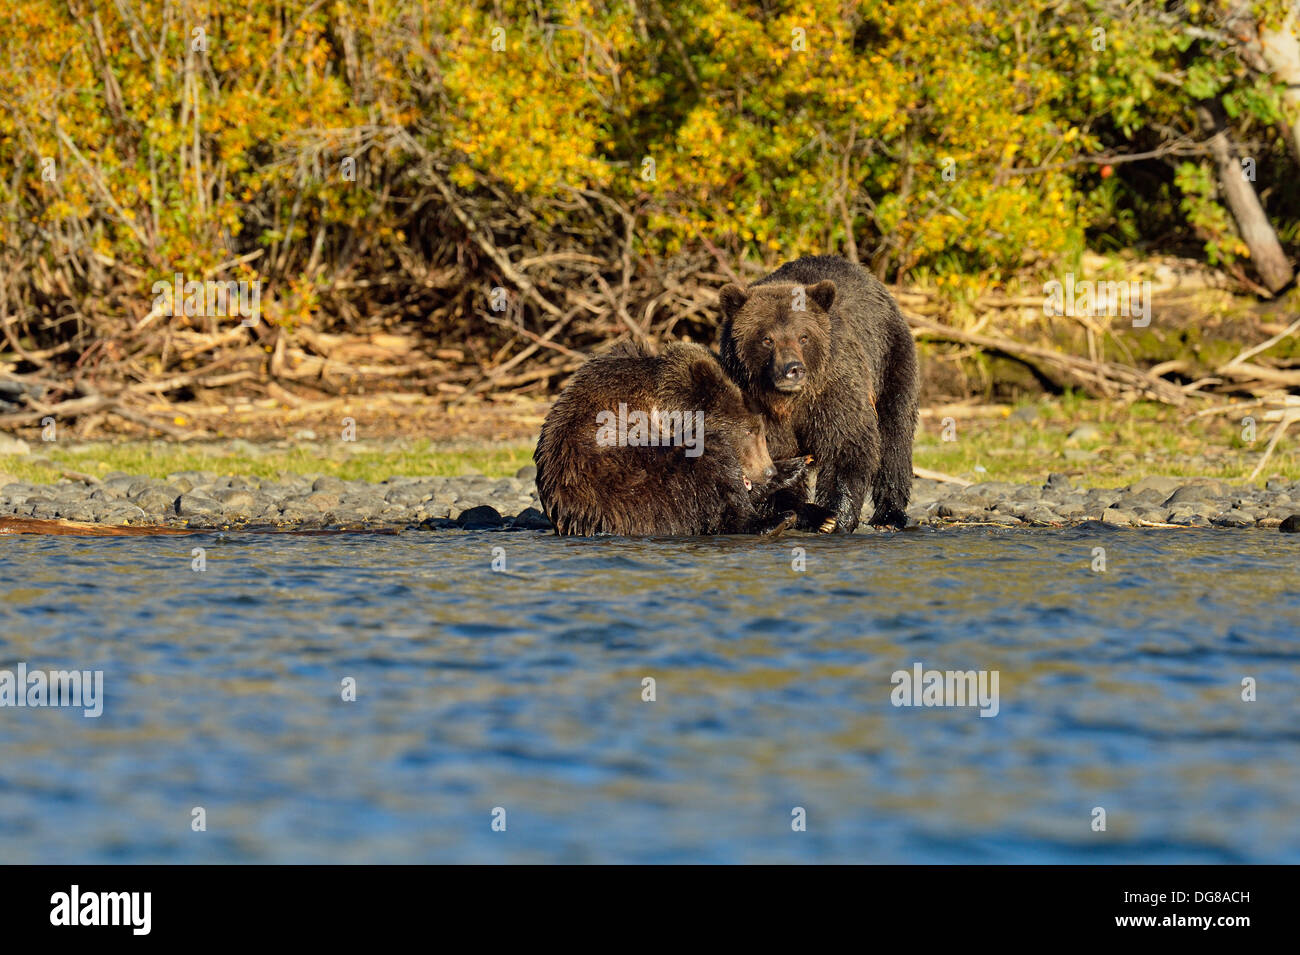 Grizzlybären, Ursus arctos, Mutter der Disziplinierung der Cub am Ufer des Salmon River während der Laichzeit Chilcotin Wildnis BC Kanada Stockfoto